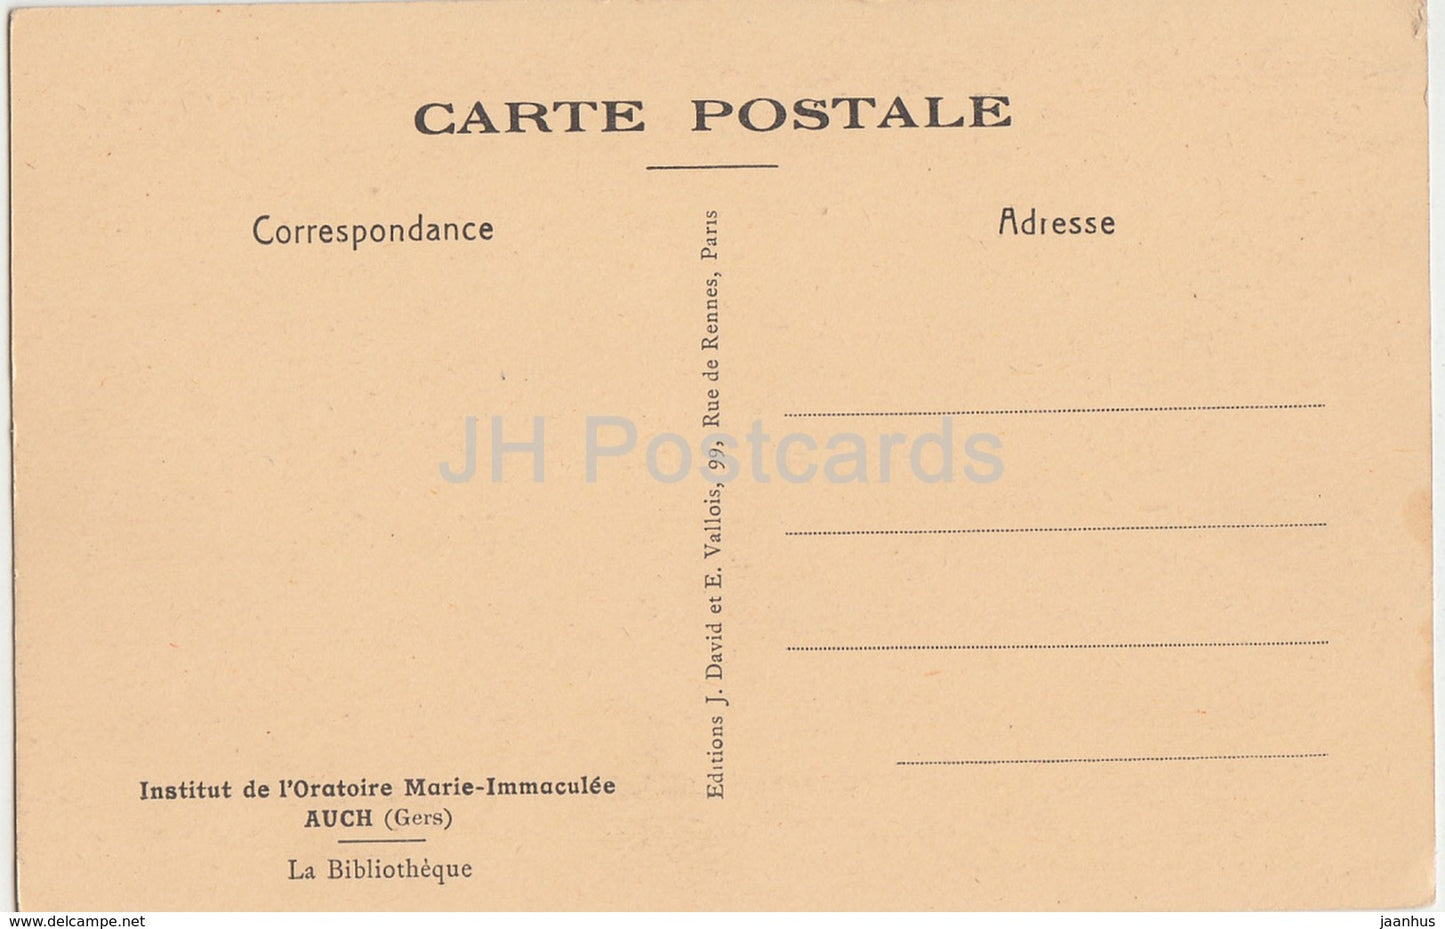 Auch - Institut de l'Oratoire Marie Immaculee - La Bibliotheque - Bibliothek - alte Postkarte - Frankreich - unbenutzt